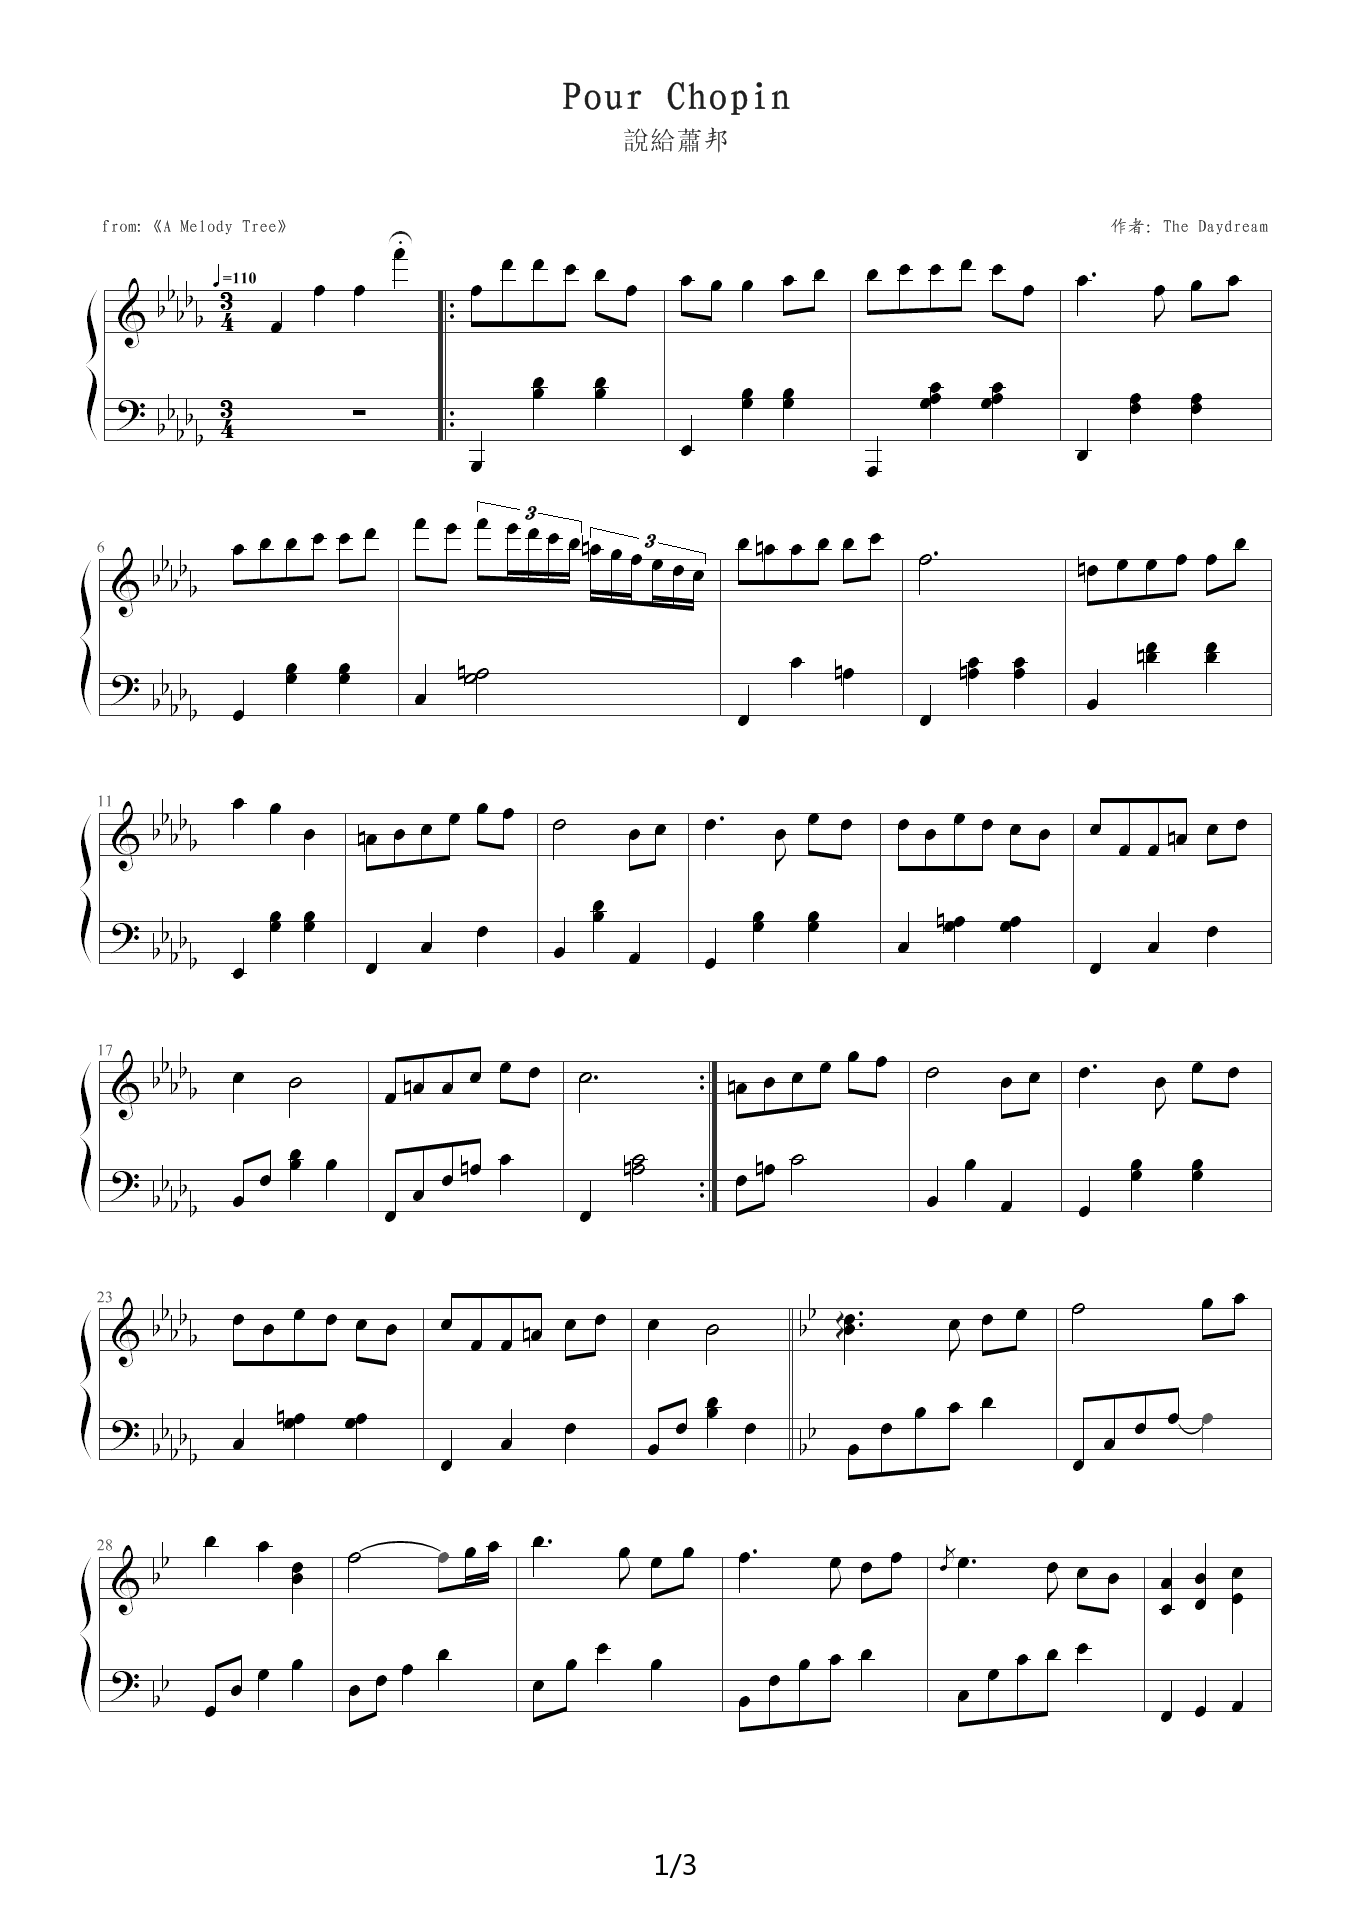 Pour Chopin钢琴谱|Pour Chopin最新钢琴谱|Pour Chopin钢琴谱下载